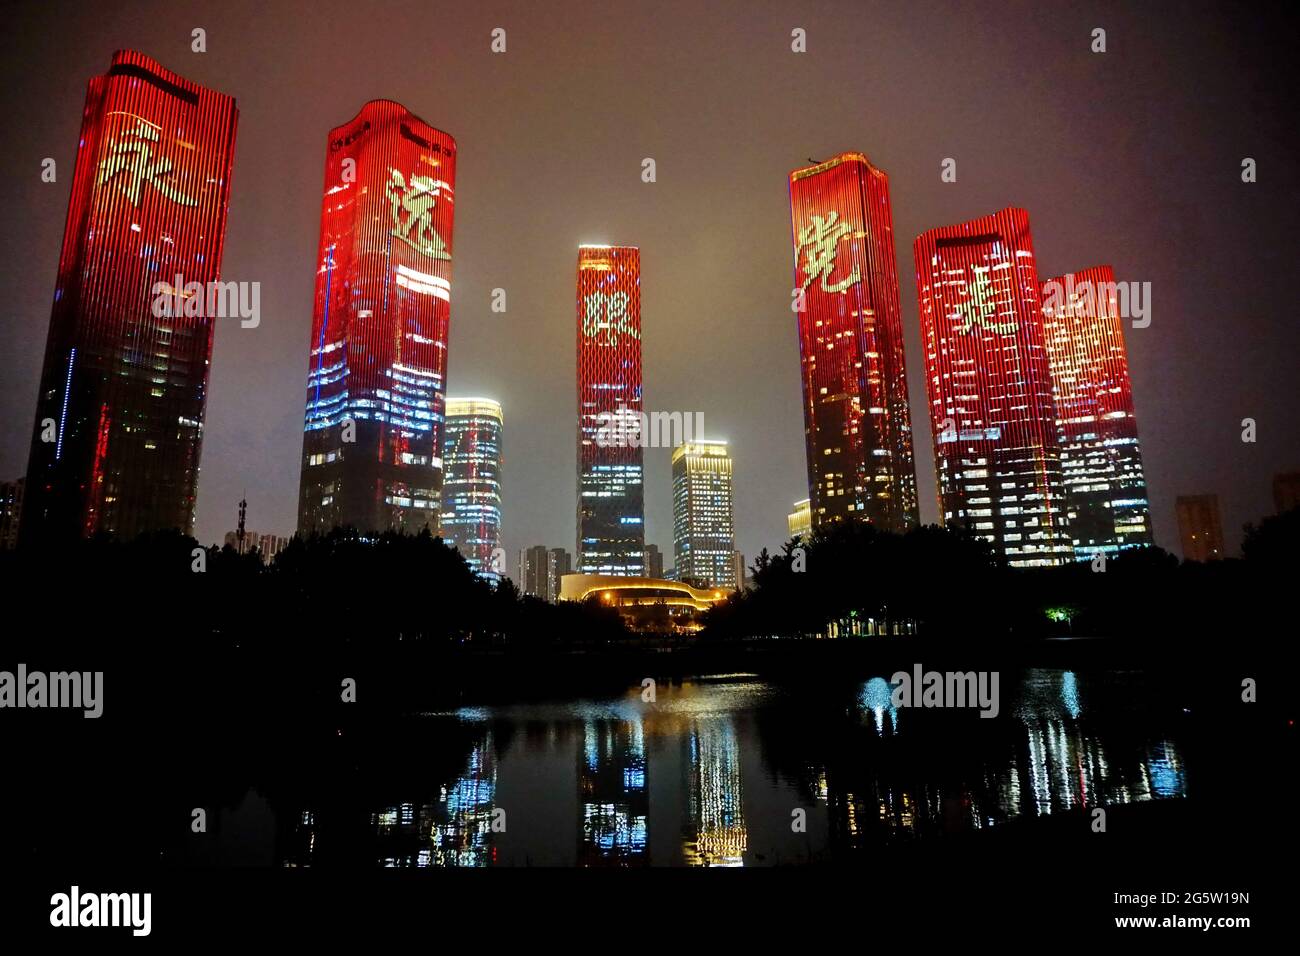 Pékin, Pékin, Chine. 30 juin 2021. Le 29 juin 2021, à Pékin, pour célébrer le 100e anniversaire de la fondation du Parti communiste de Chine, Pékin a allumé des lumières festives le 1er juillet. Crédit : SIPA Asia/ZUMA Wire/Alay Live News Banque D'Images